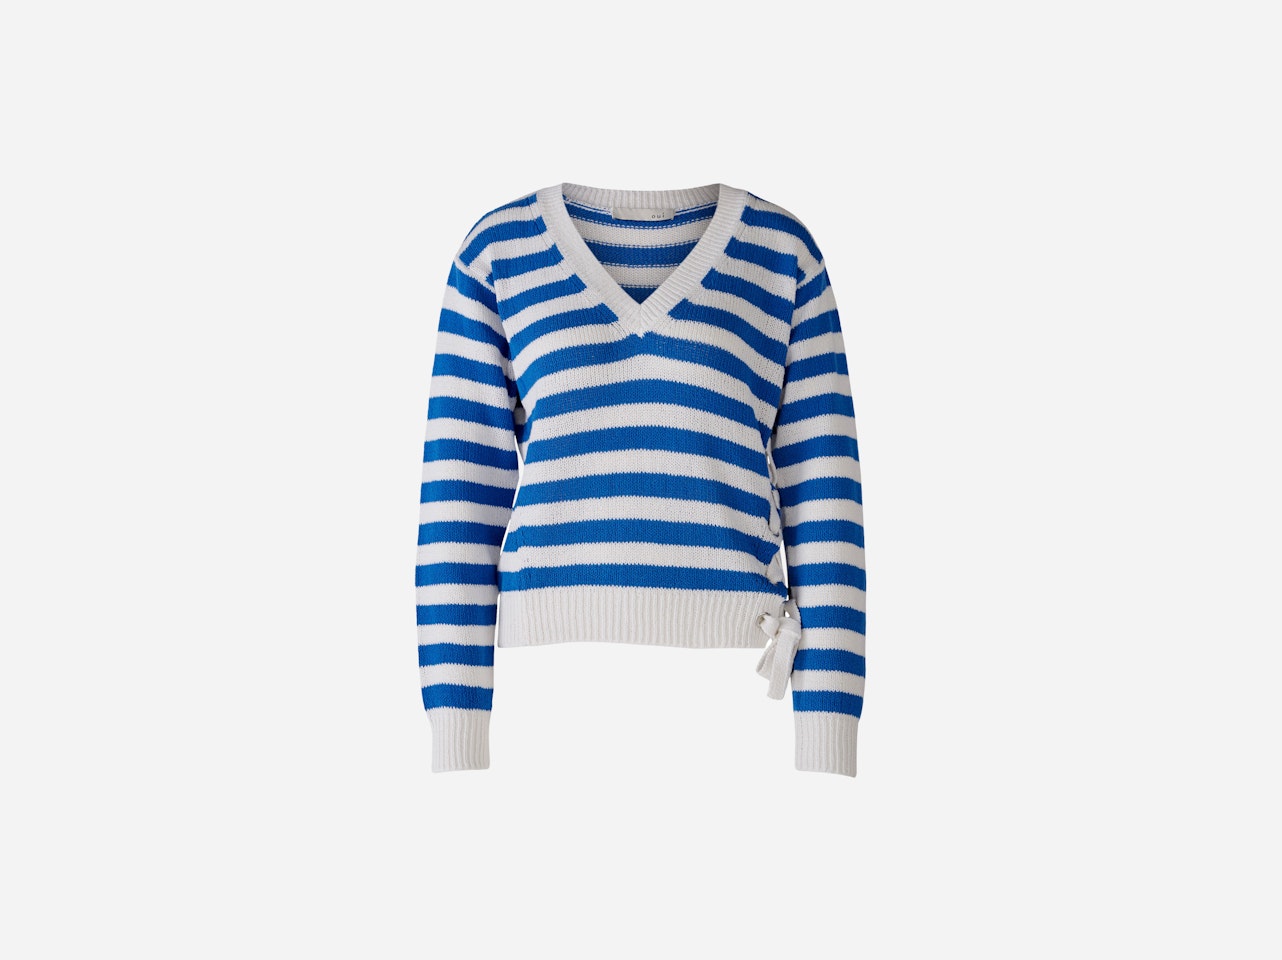 Bild 1 von Knitted jumper 100% cotton in offwhite blue | Oui